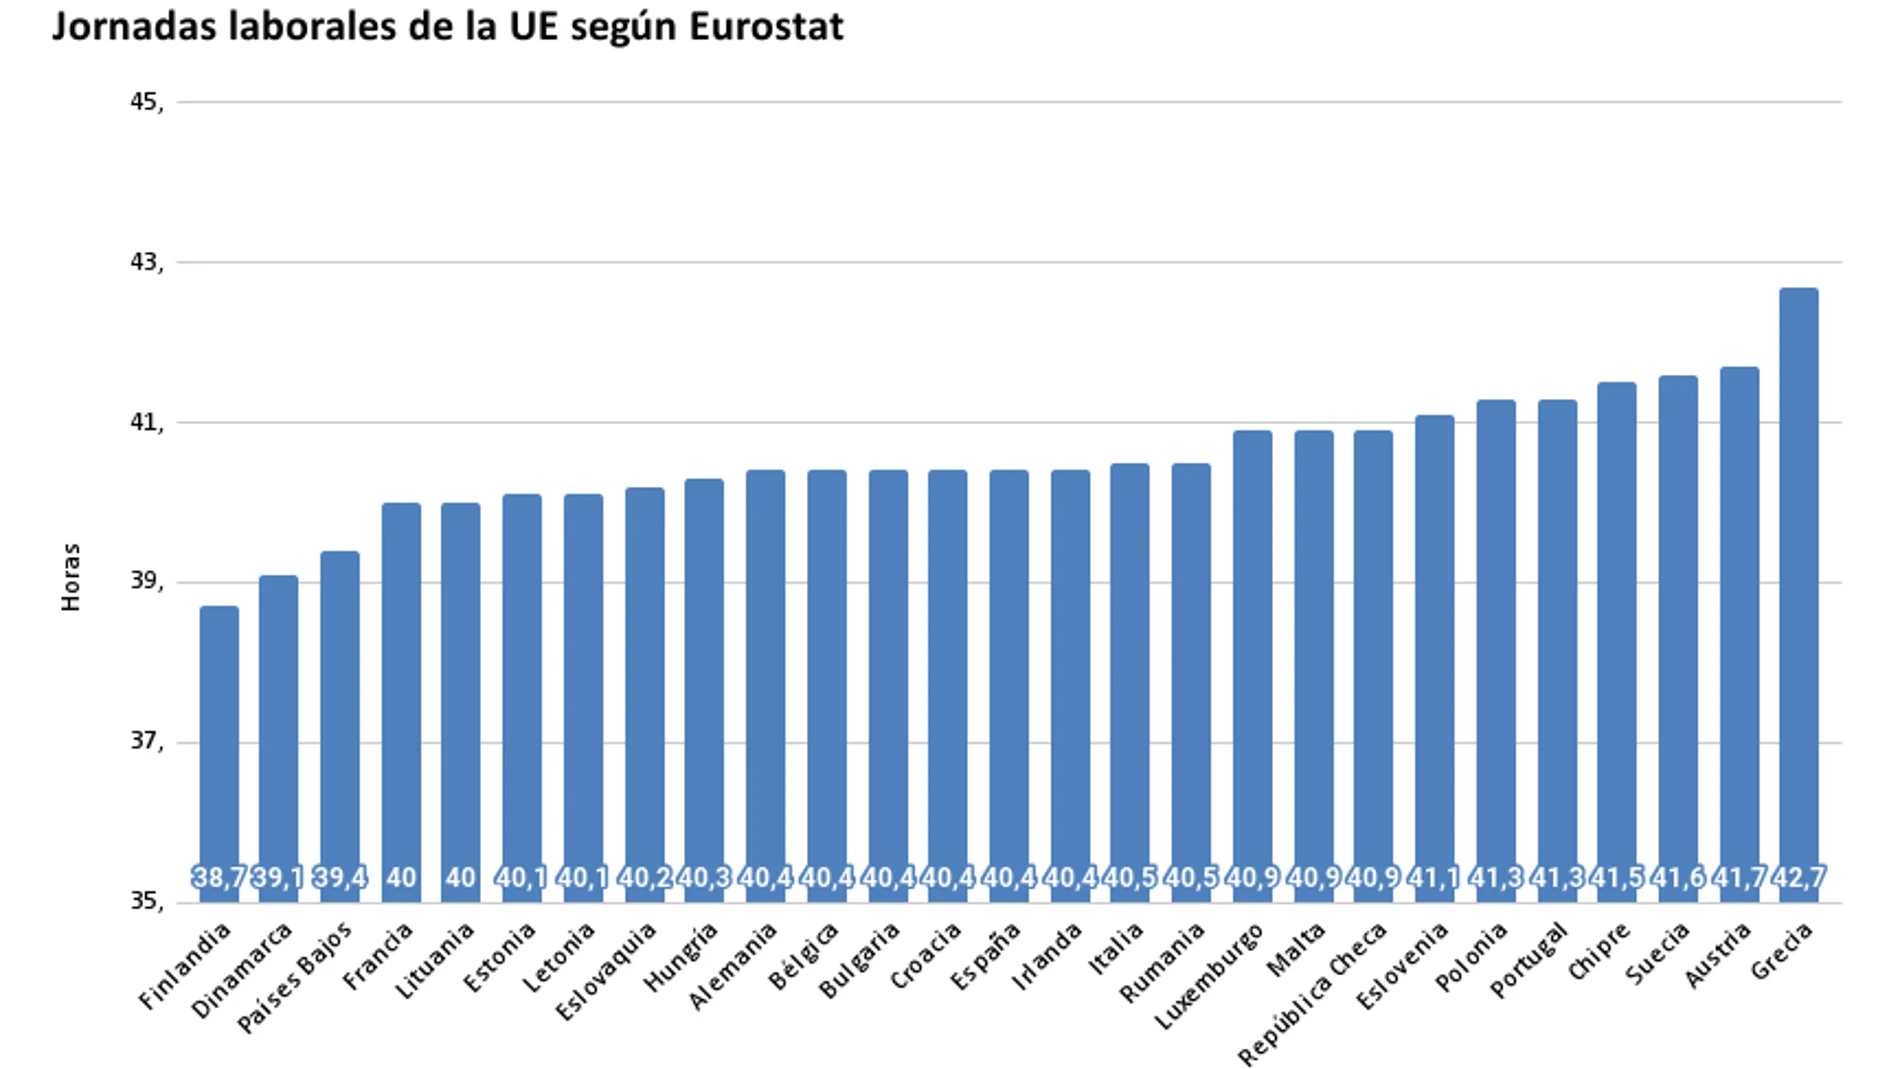 Gráfico de las jornadas laborales de los países de la Unión Europea según datos recogidos por Eurostat